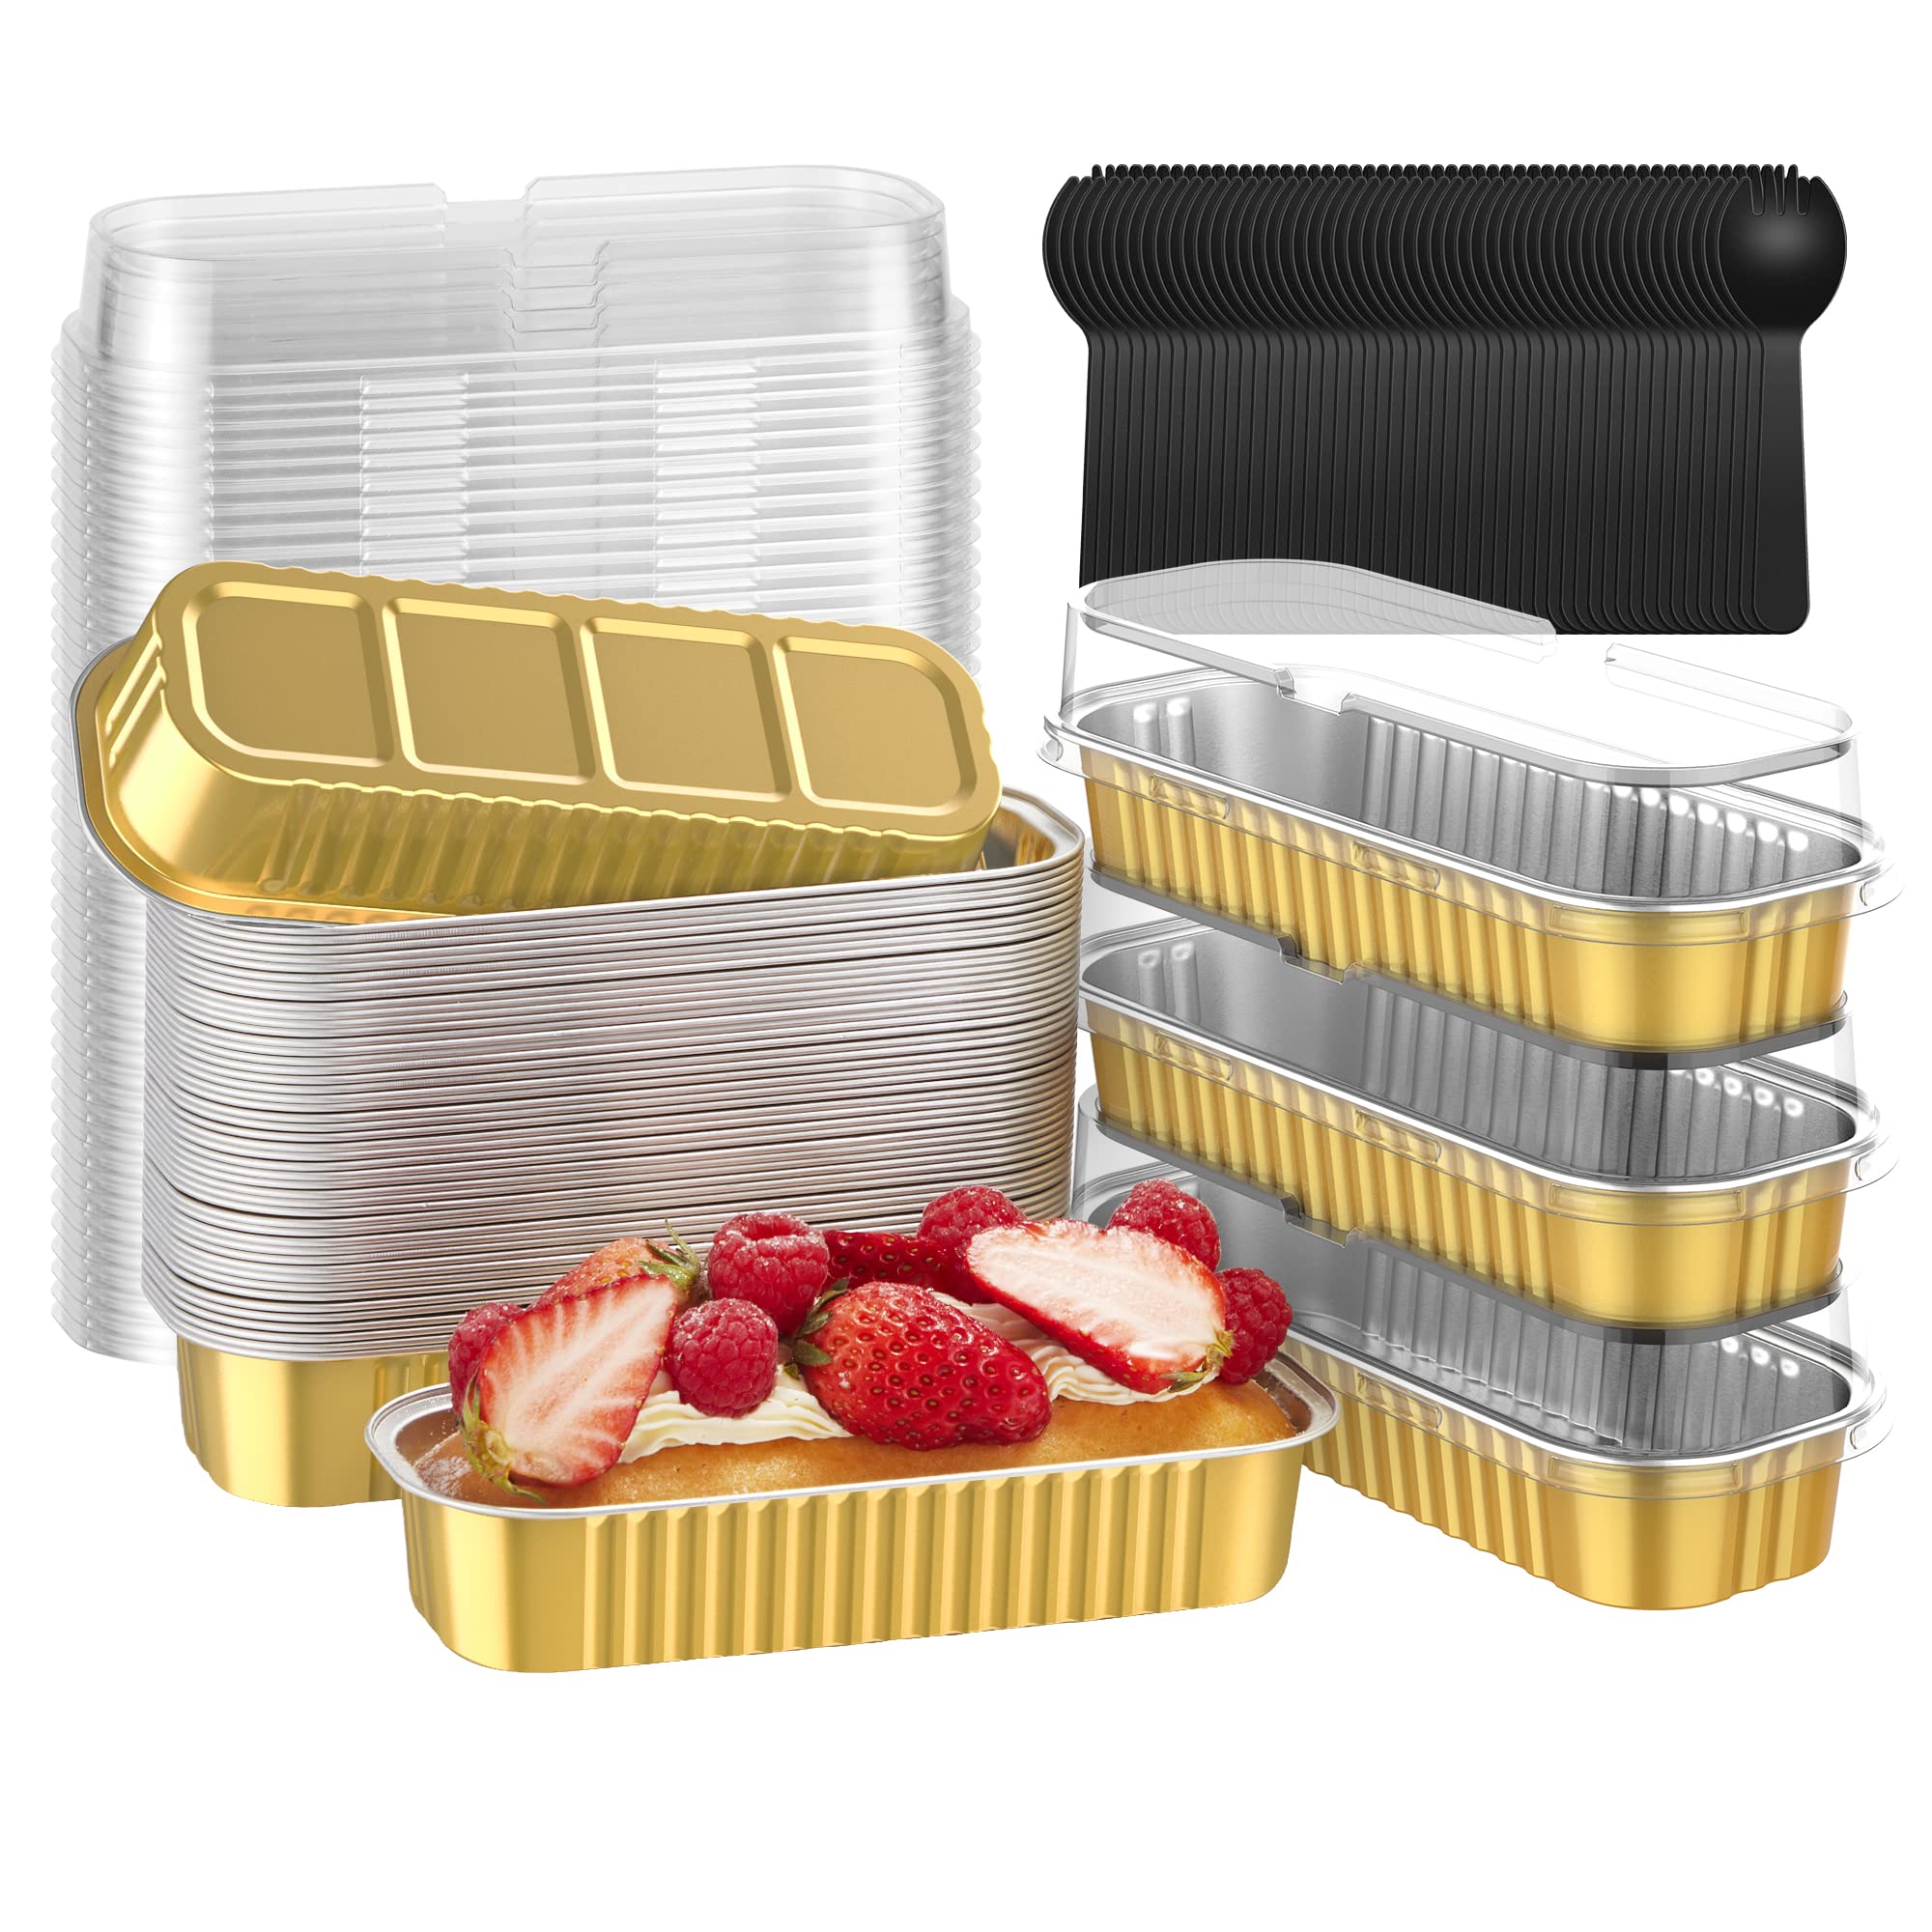 Kootek Mini Loaf Pans with Lids and Sporks (50 Pack, 6.8oz), Rectangle